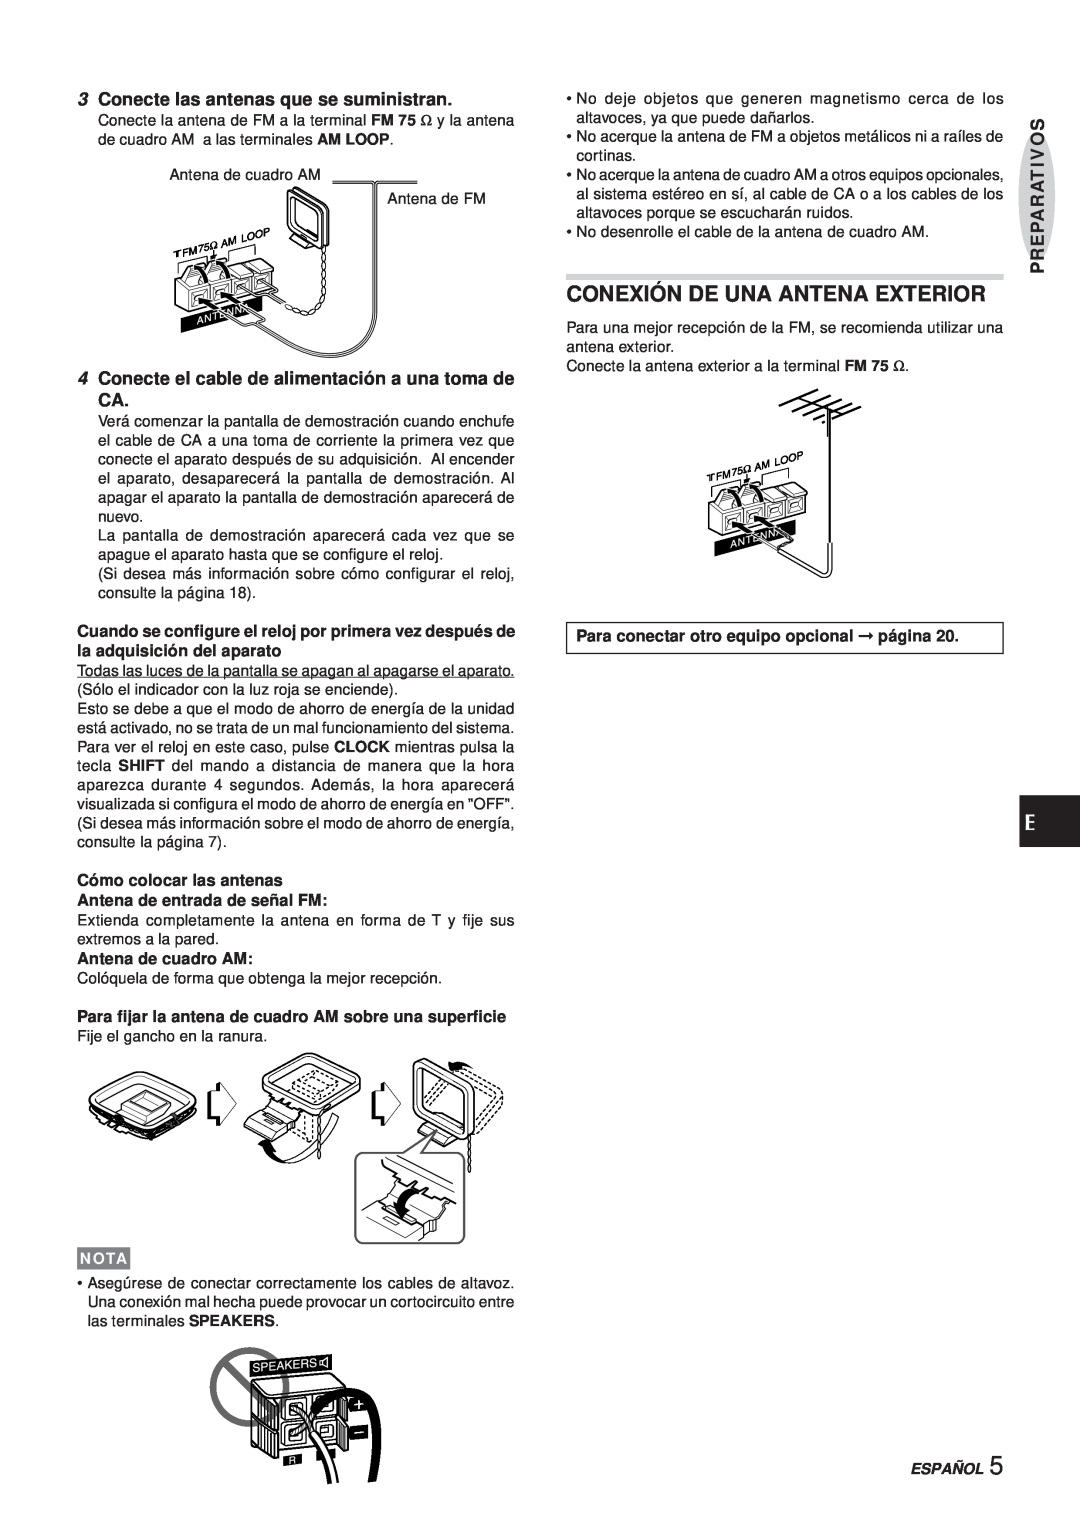 Aiwa XR-MS3 Conexión De Una Antena Exterior, Conecte las antenas que se suministran, Antena de cuadro AM, Nota, Español 